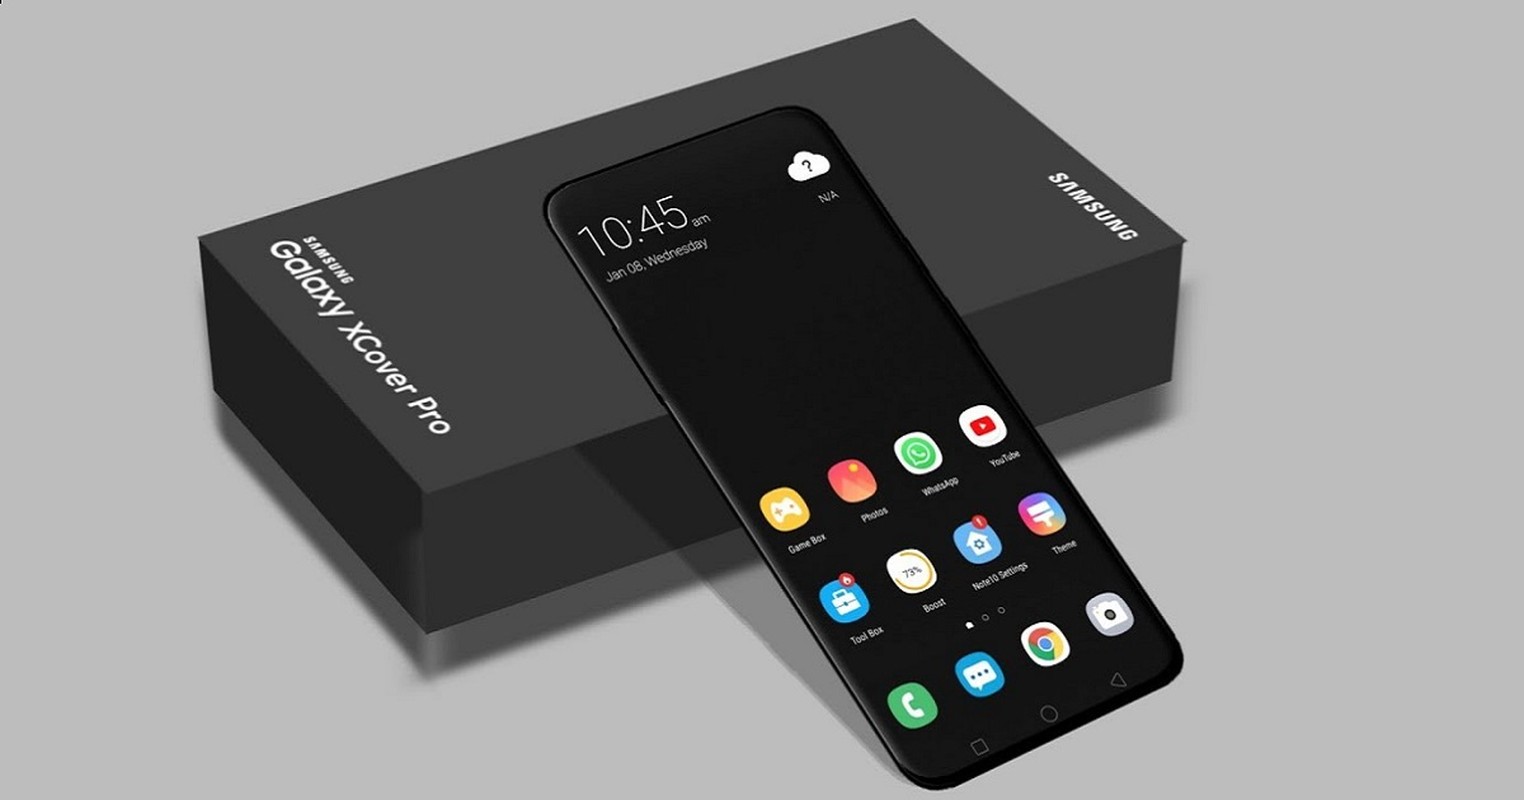 “Mo xe” smartphone “noi dong coi da” Samsung Galaxy XCover Pro sap ra-Hinh-5